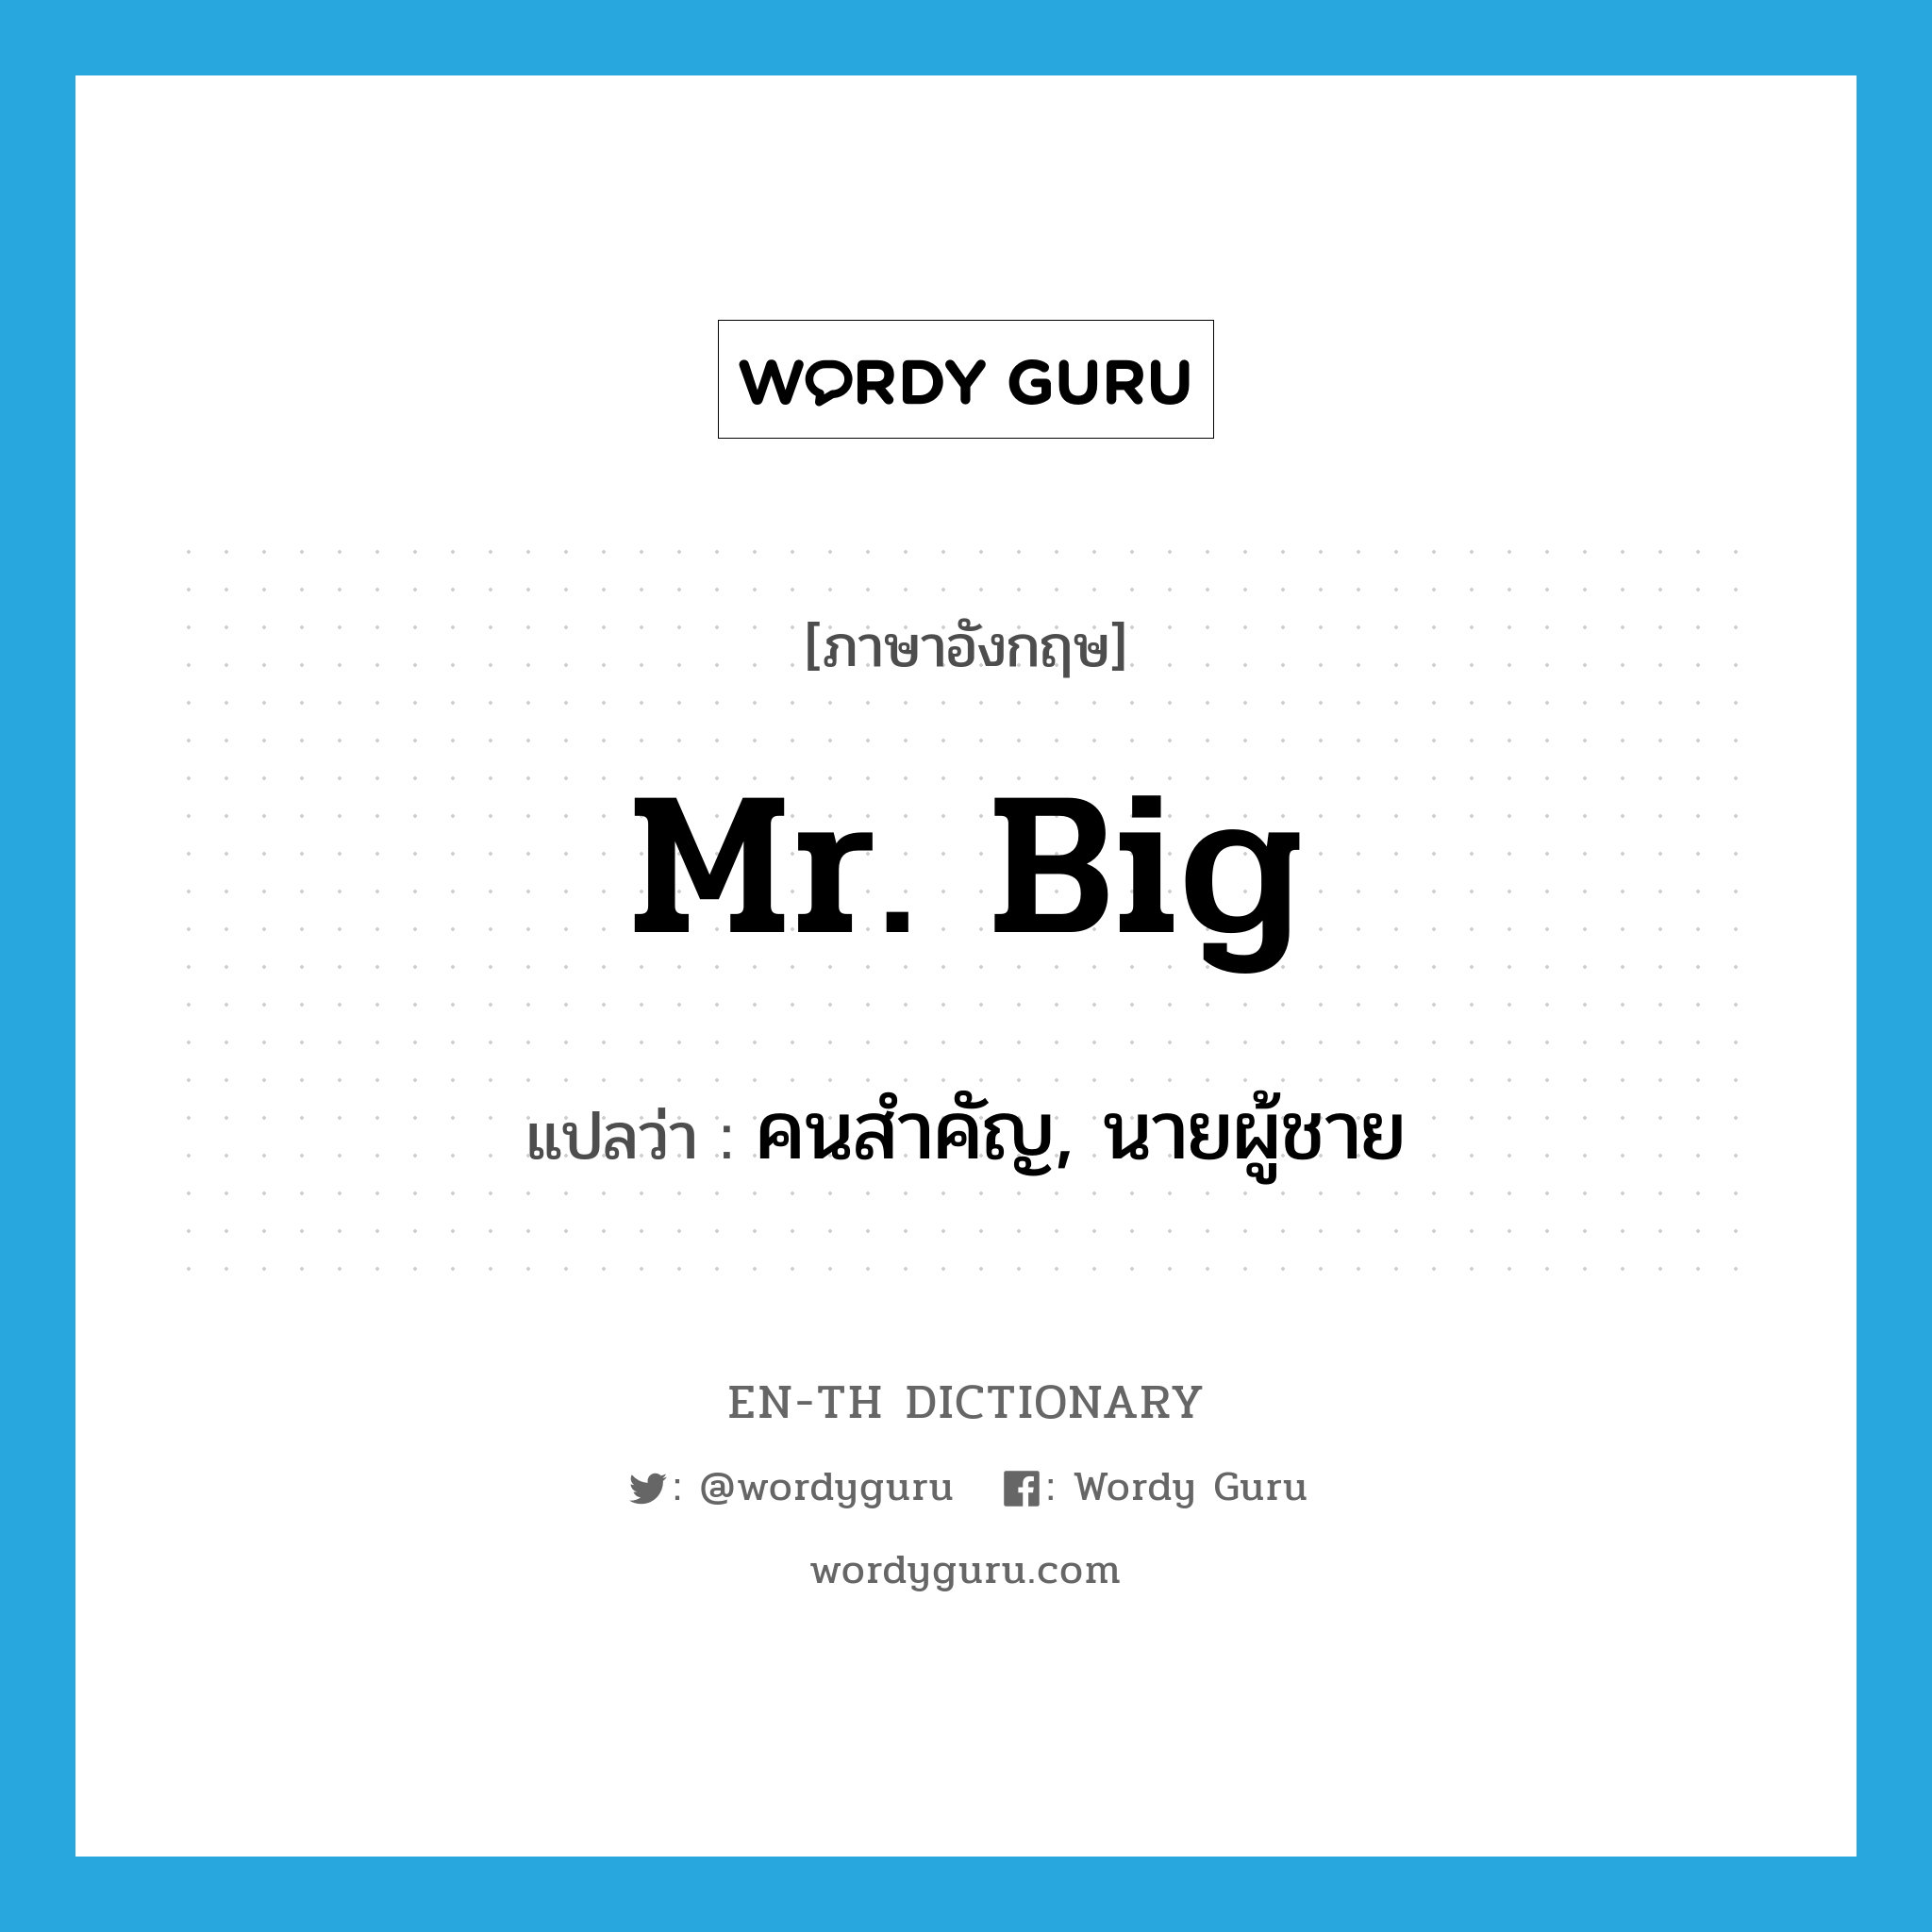 Mr. Big แปลว่า?, คำศัพท์ภาษาอังกฤษ Mr. Big แปลว่า คนสำคัญ, นายผู้ชาย ประเภท SL หมวด SL